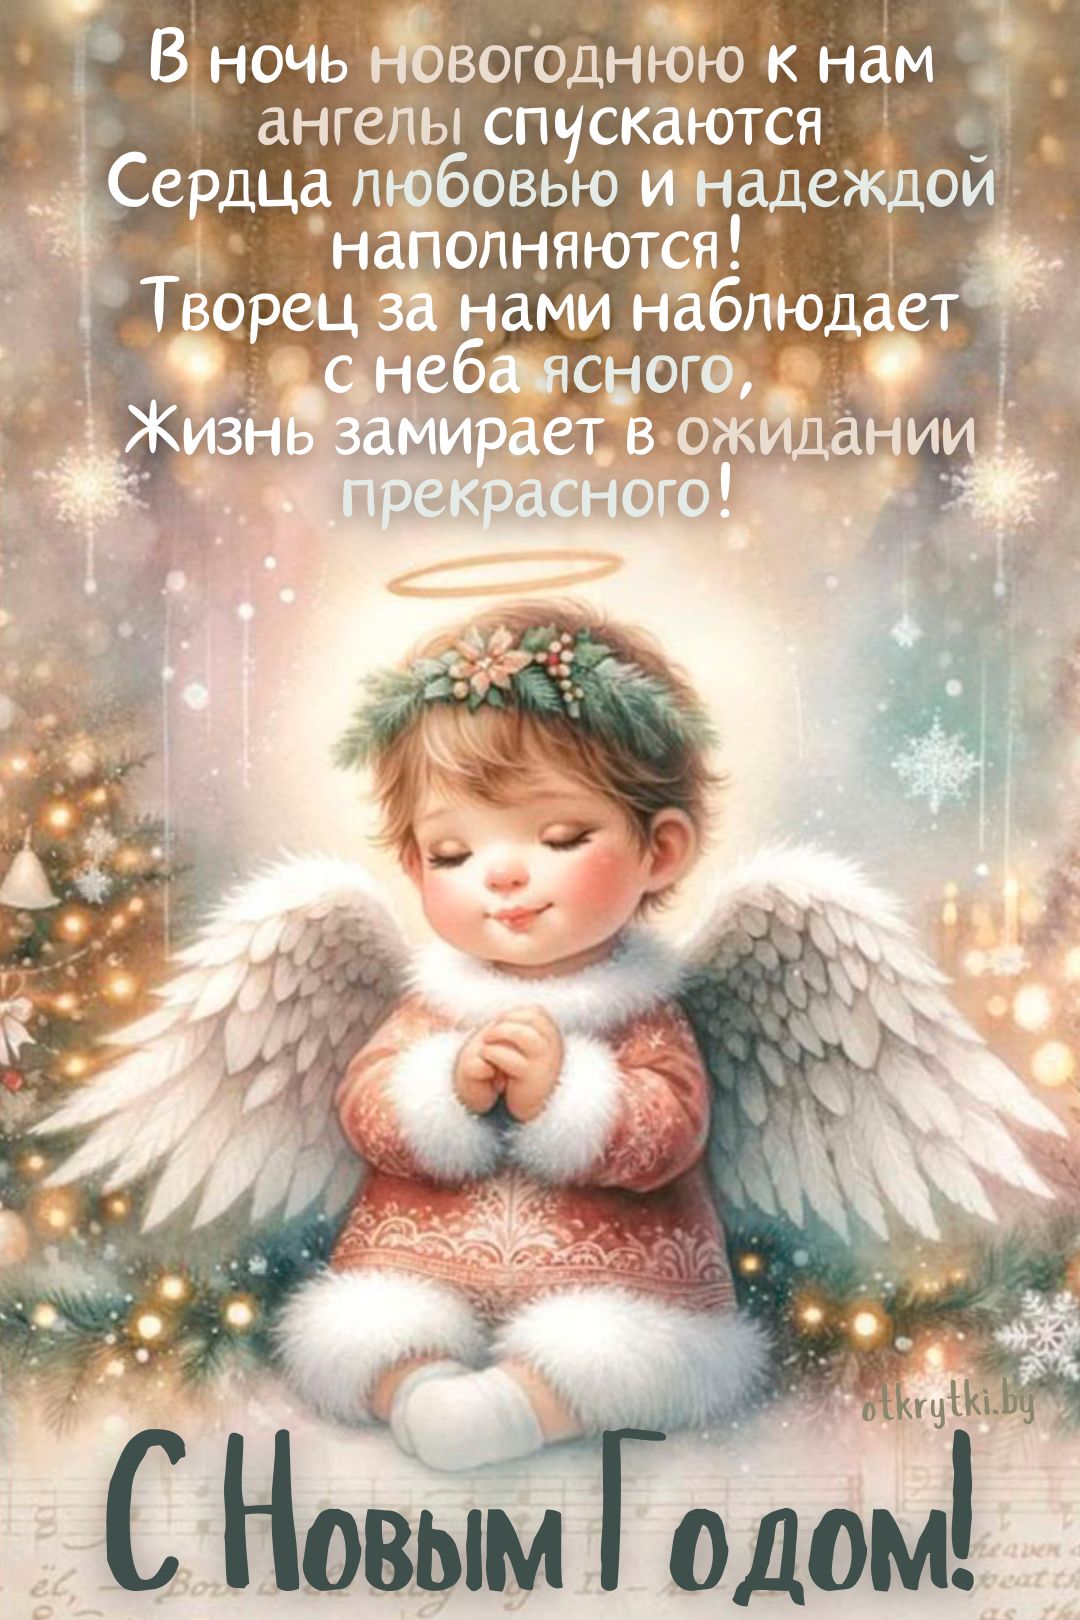 Новогодняя открытка с ангелом